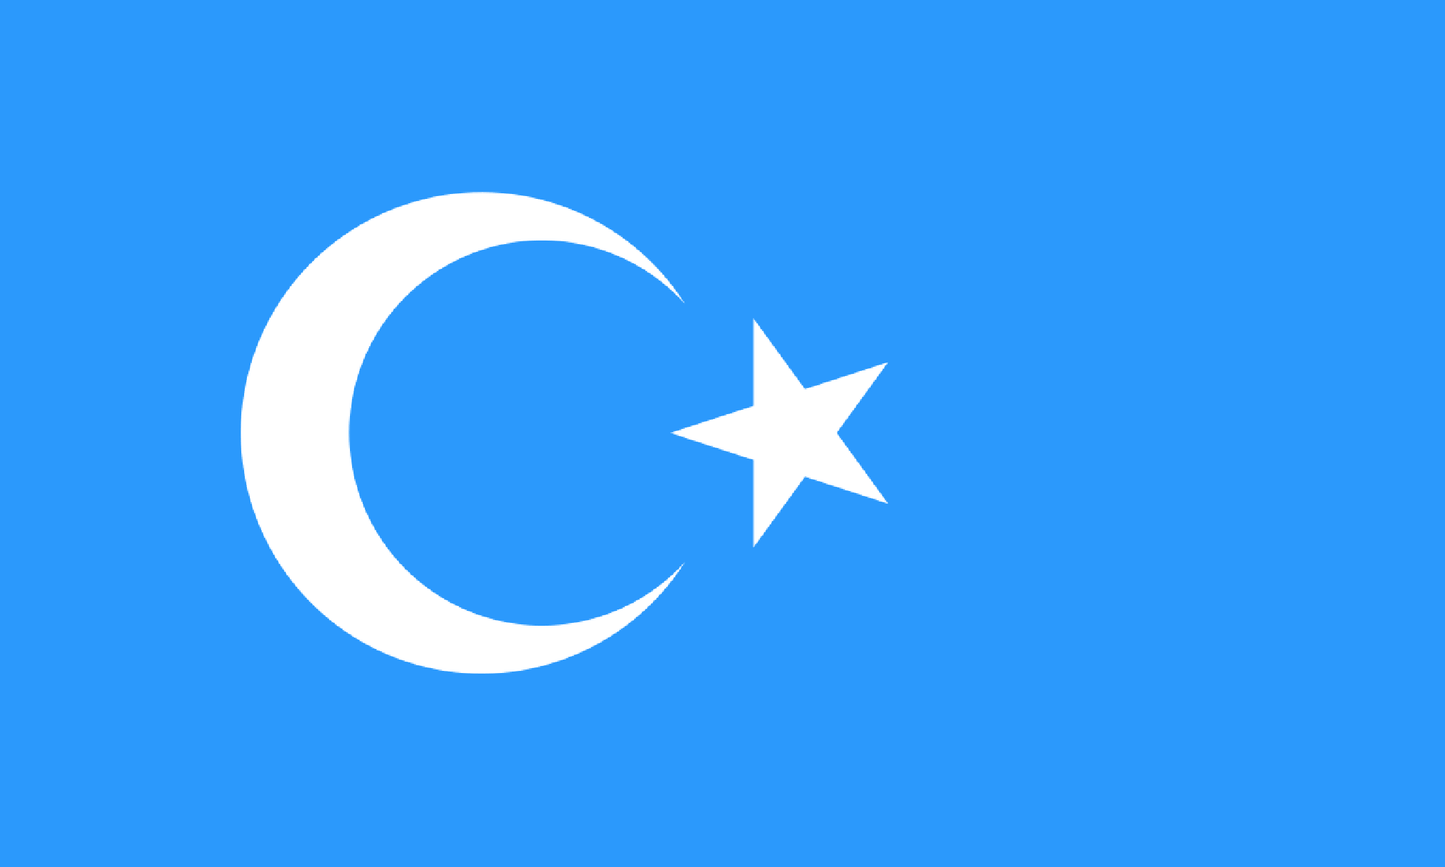 INR-UGR-15x22-2 - уйгурский национальный флаг, размер: 15х22 см, материал: атлас. Печать с двух сторон. Подставка и шток приобретаются отдельно